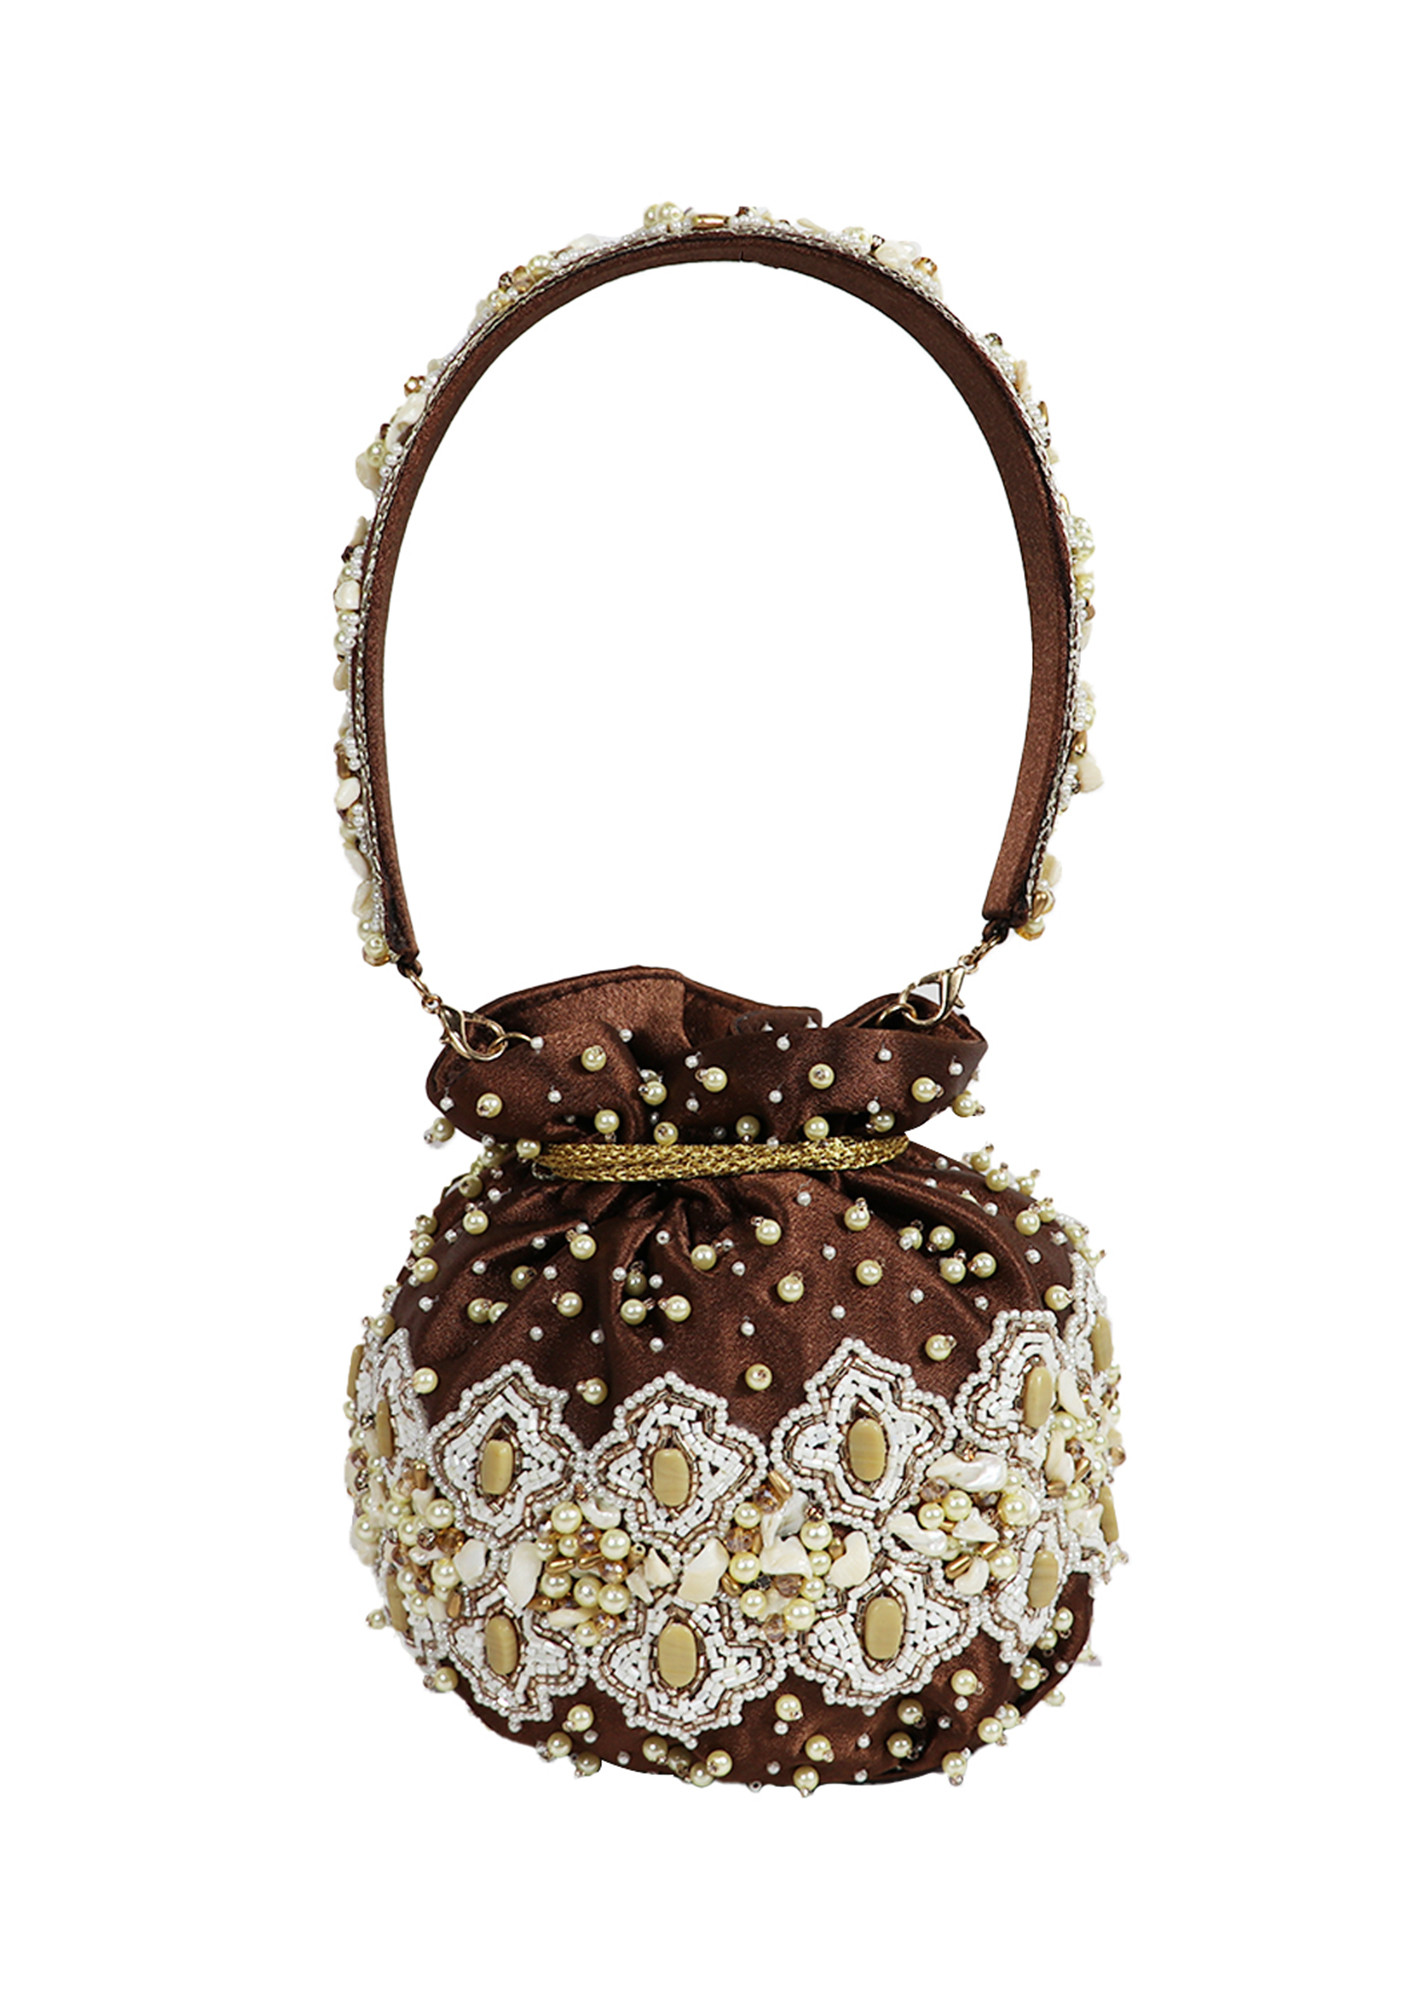 Embellished Brown Colored Clutch Potli Bag